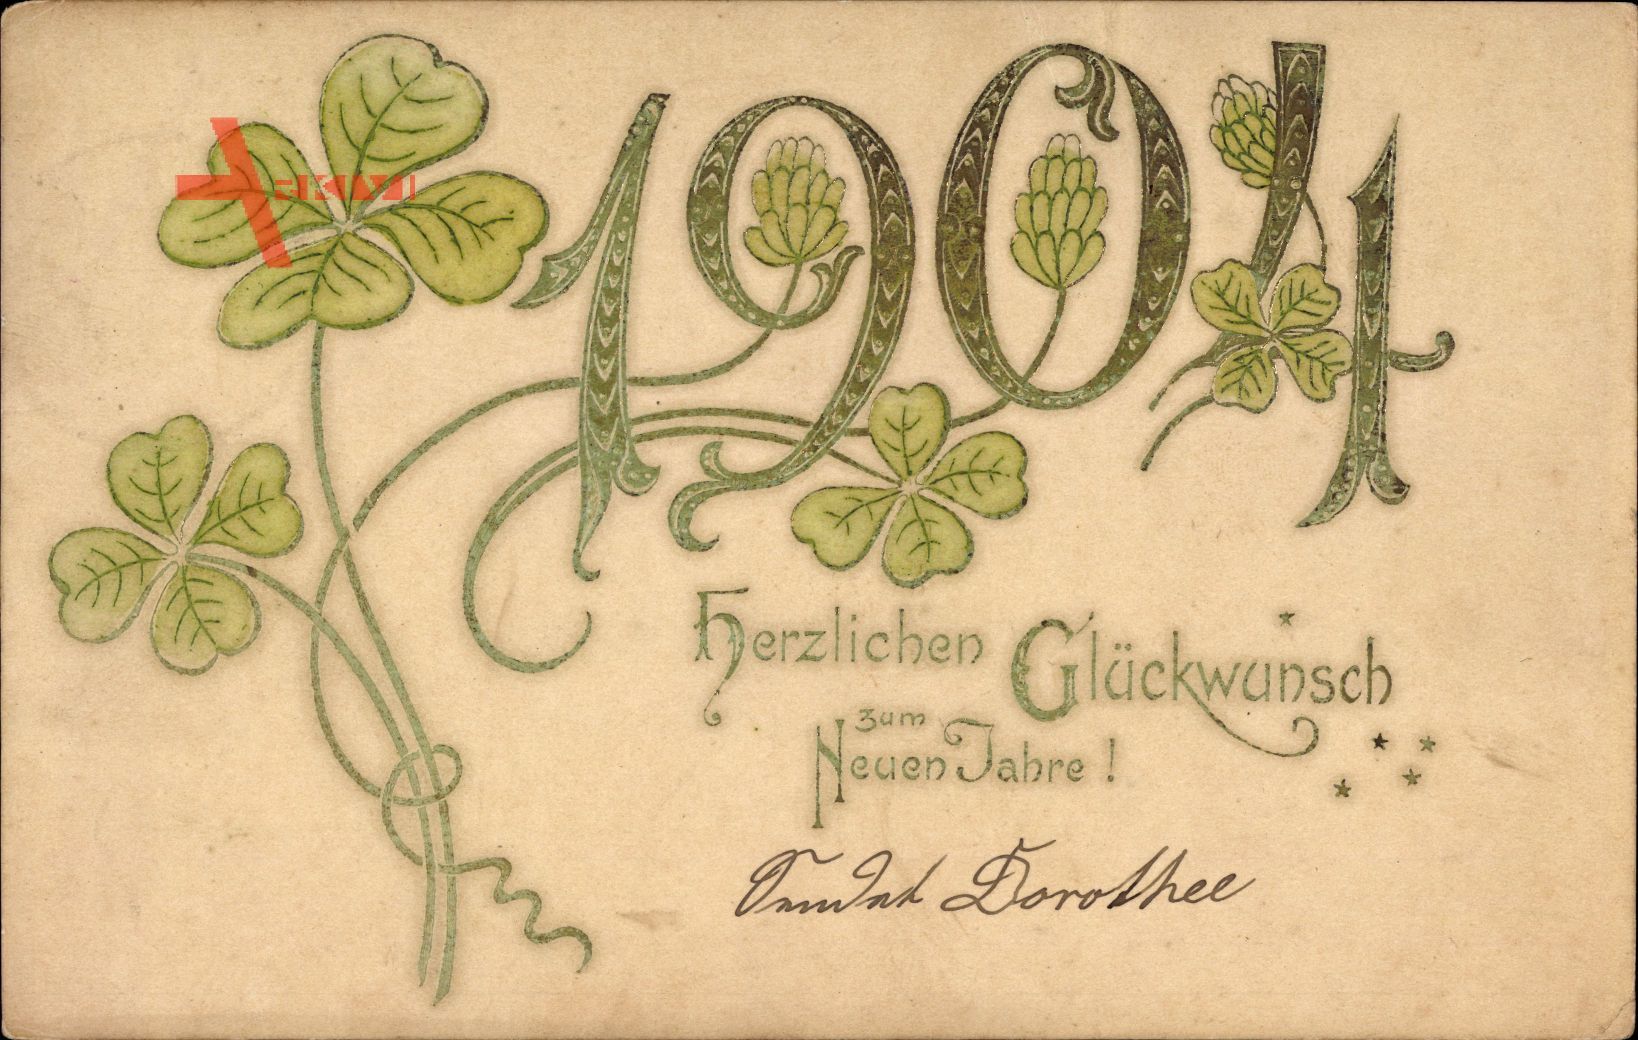 Glückwunsch Neujahr, Jahreszahl 1904, Kleeblätter